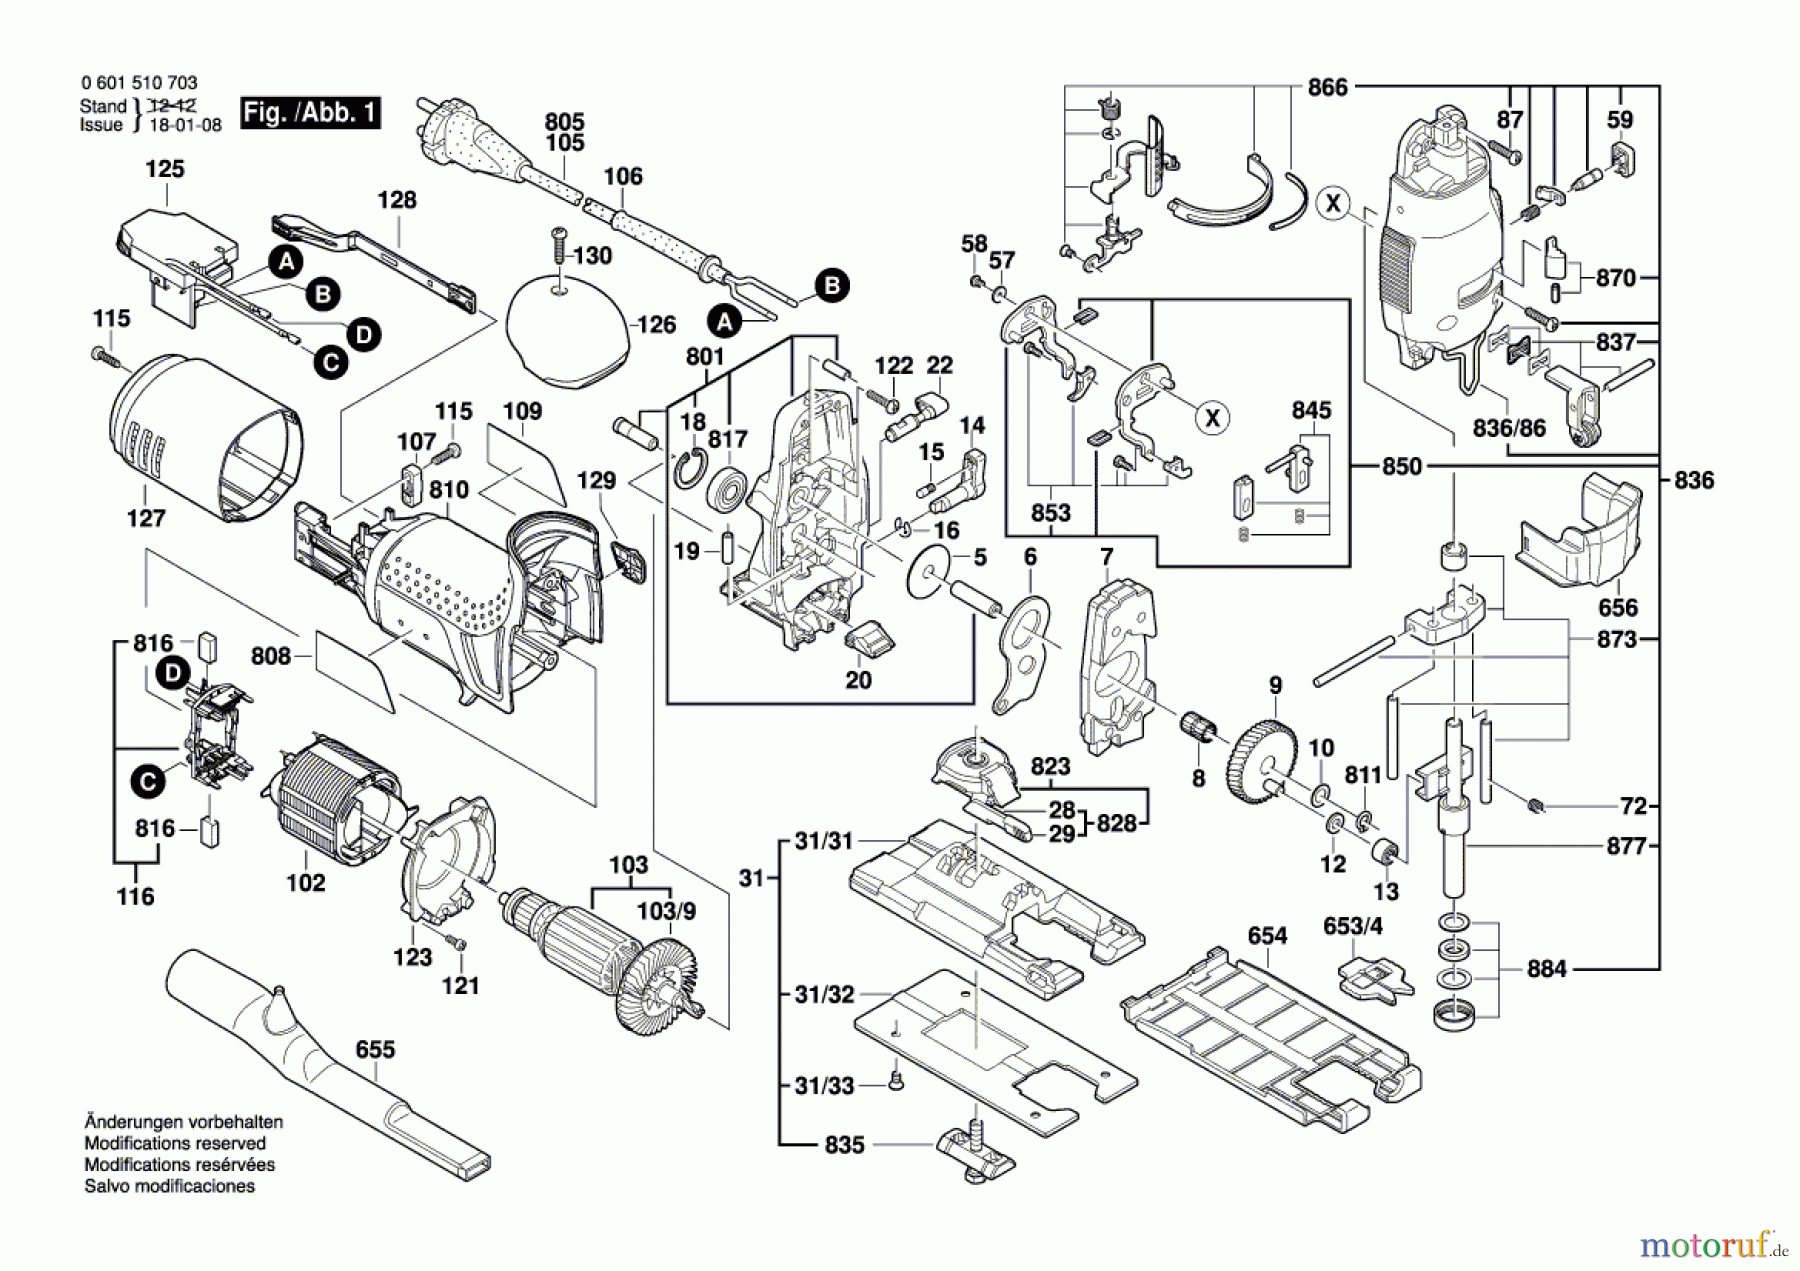  Bosch Werkzeug Pendelstichsäge GST 135 CE Seite 1